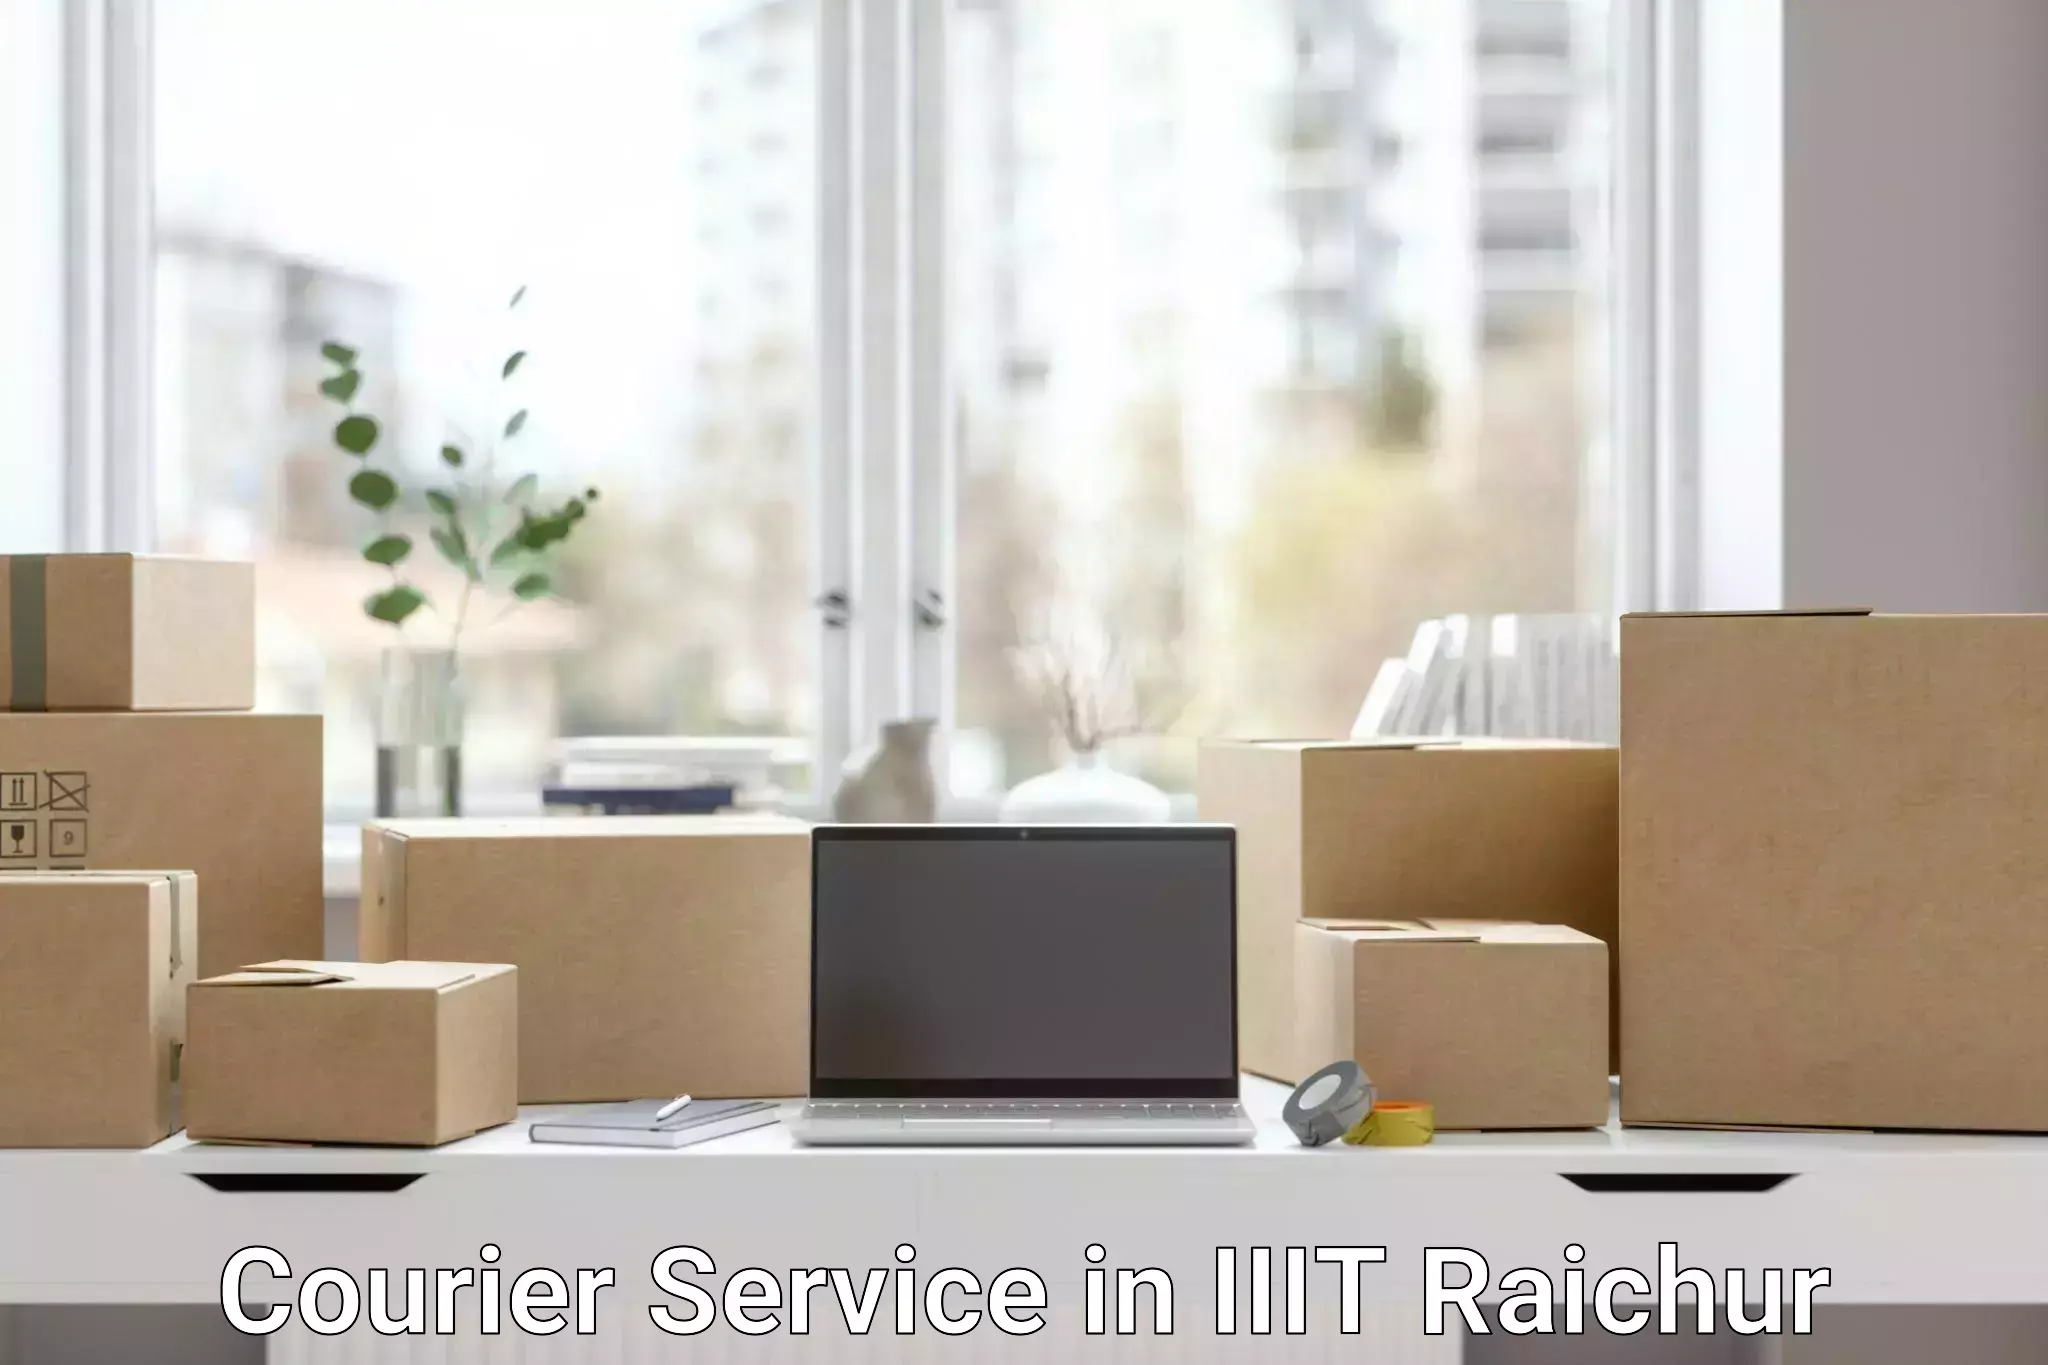 Nationwide courier service in IIIT Raichur